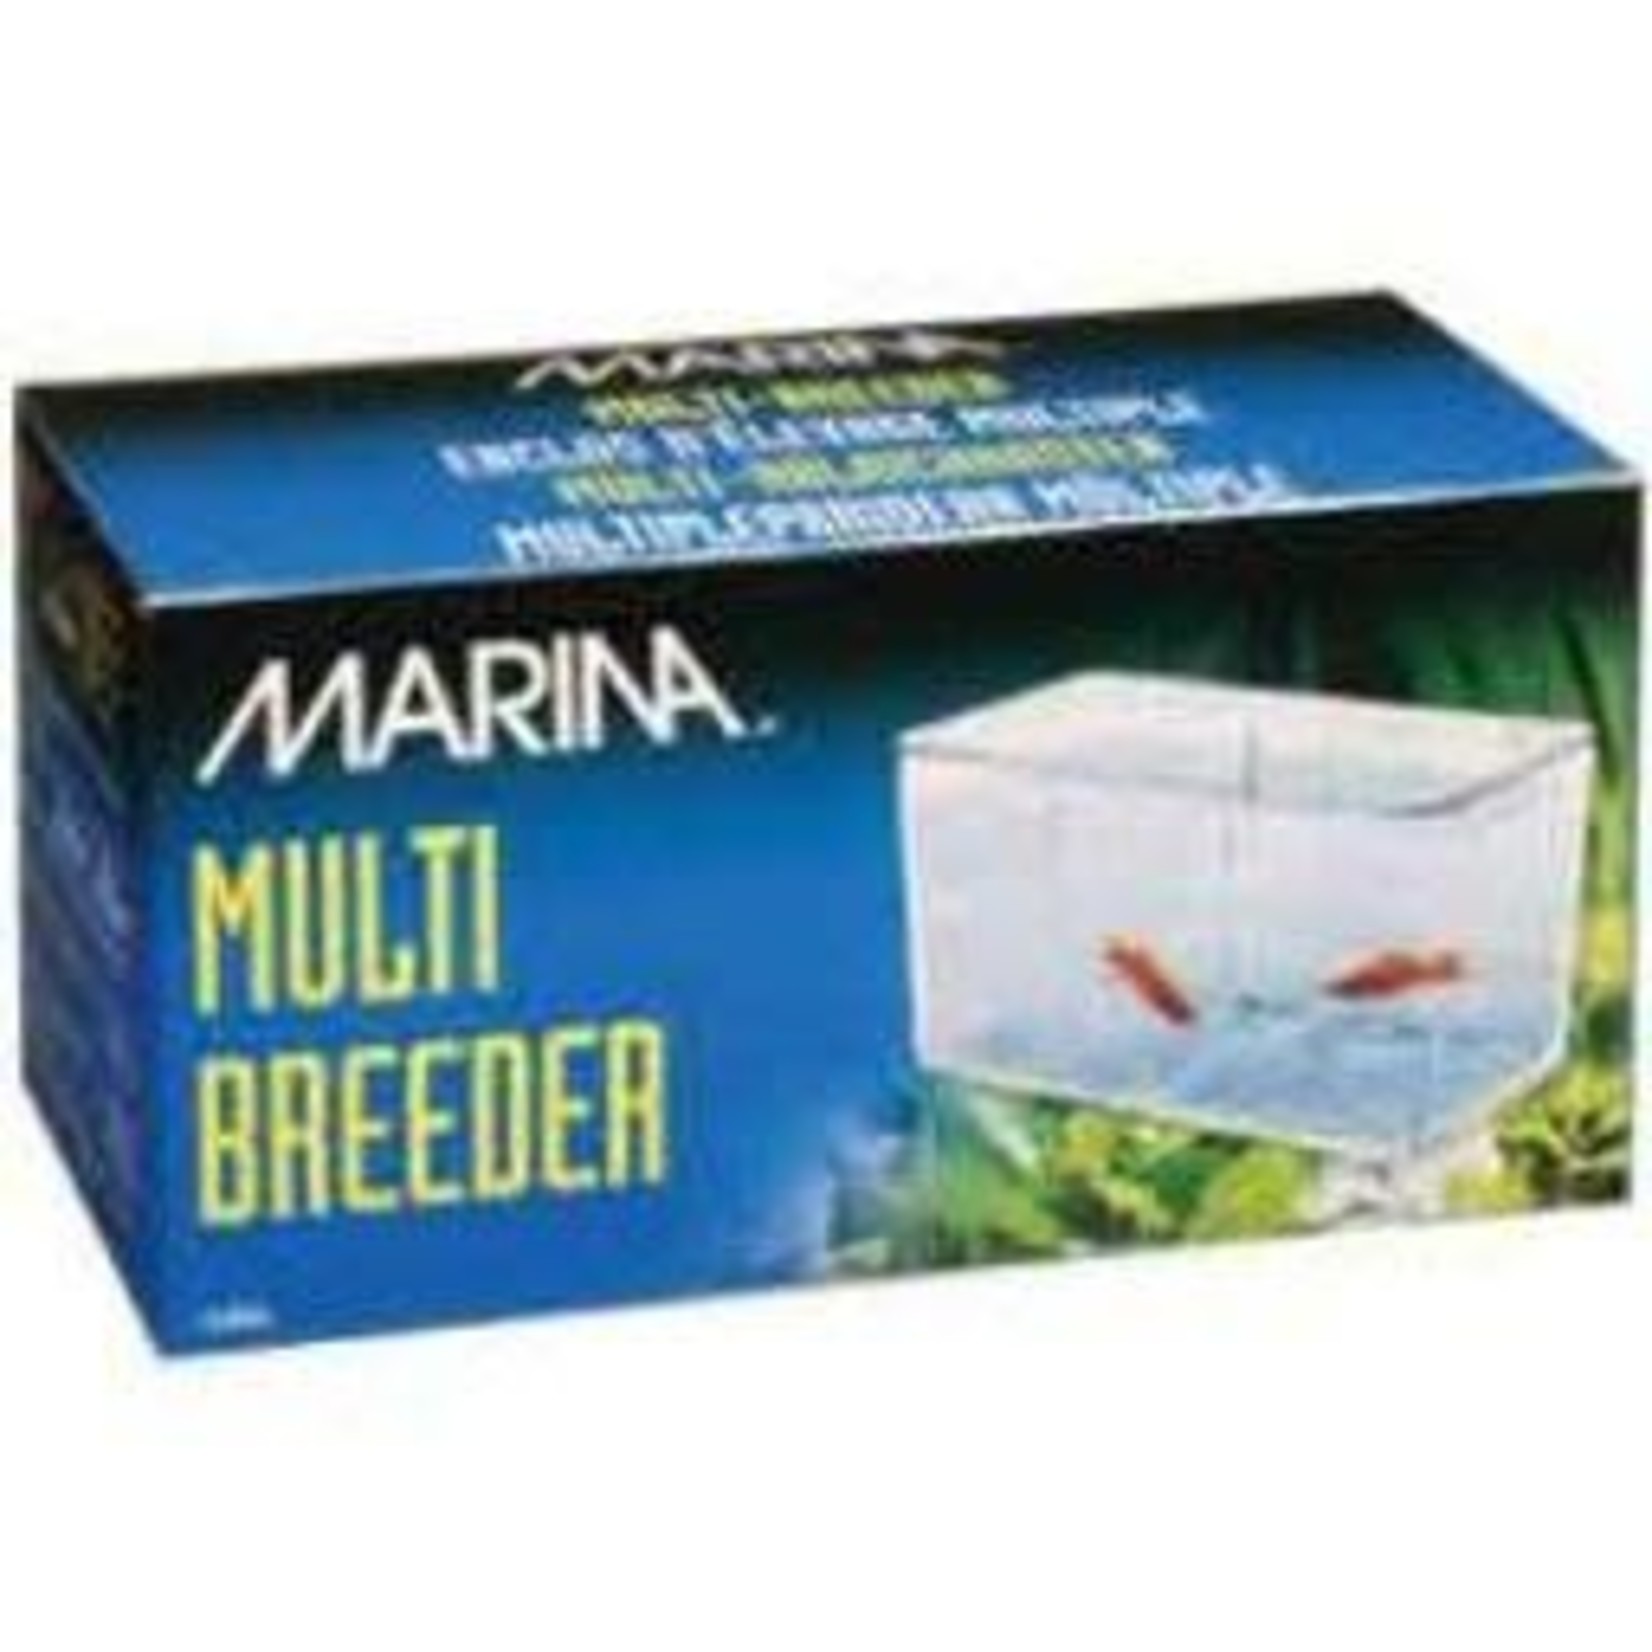 MARINA Marina Multi-Breed.5-Way Trap